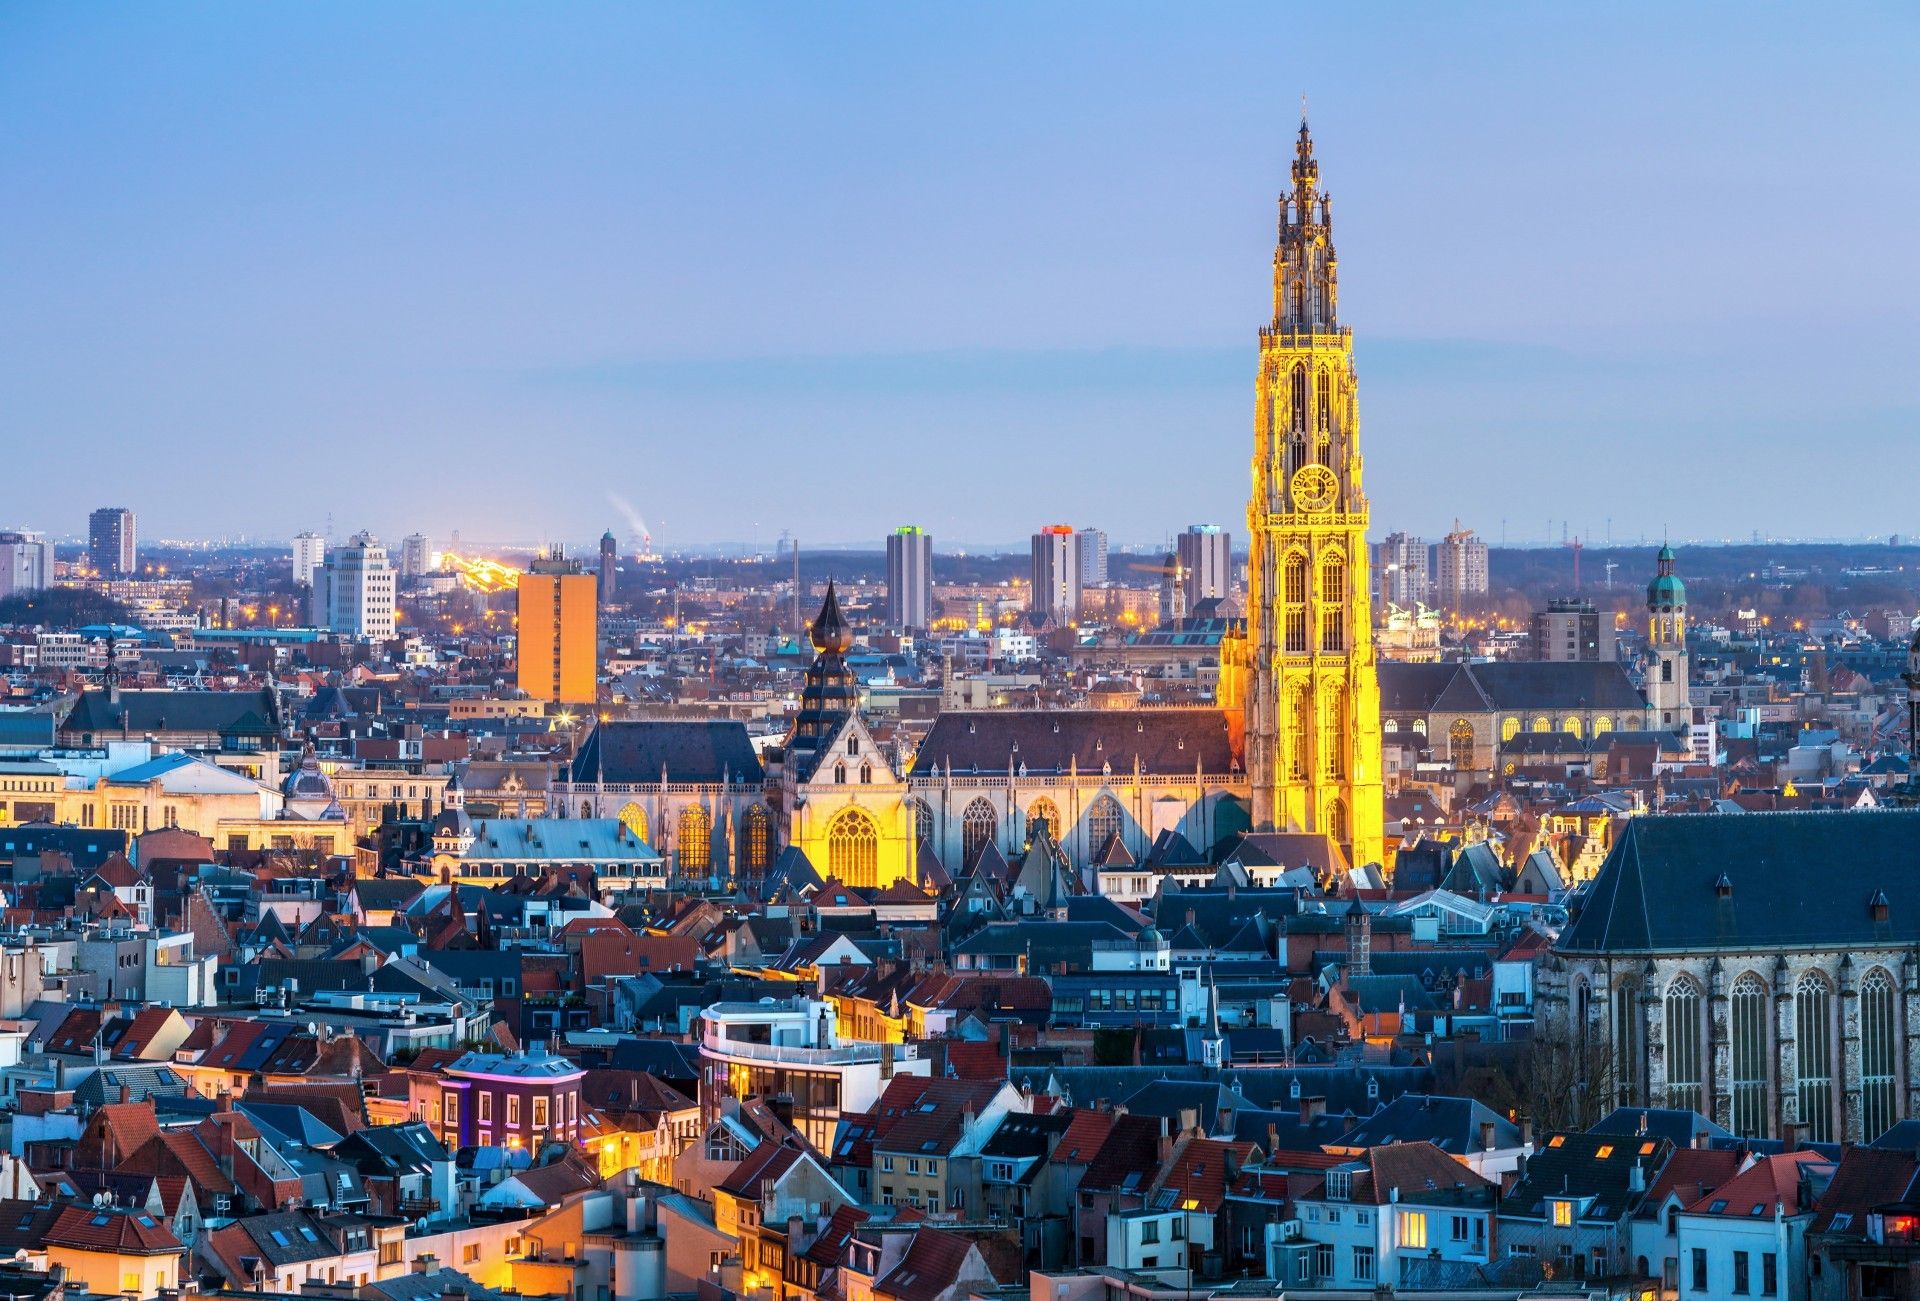 Anversa e Bruxelles: città da scoprire all’insegna dell’arte